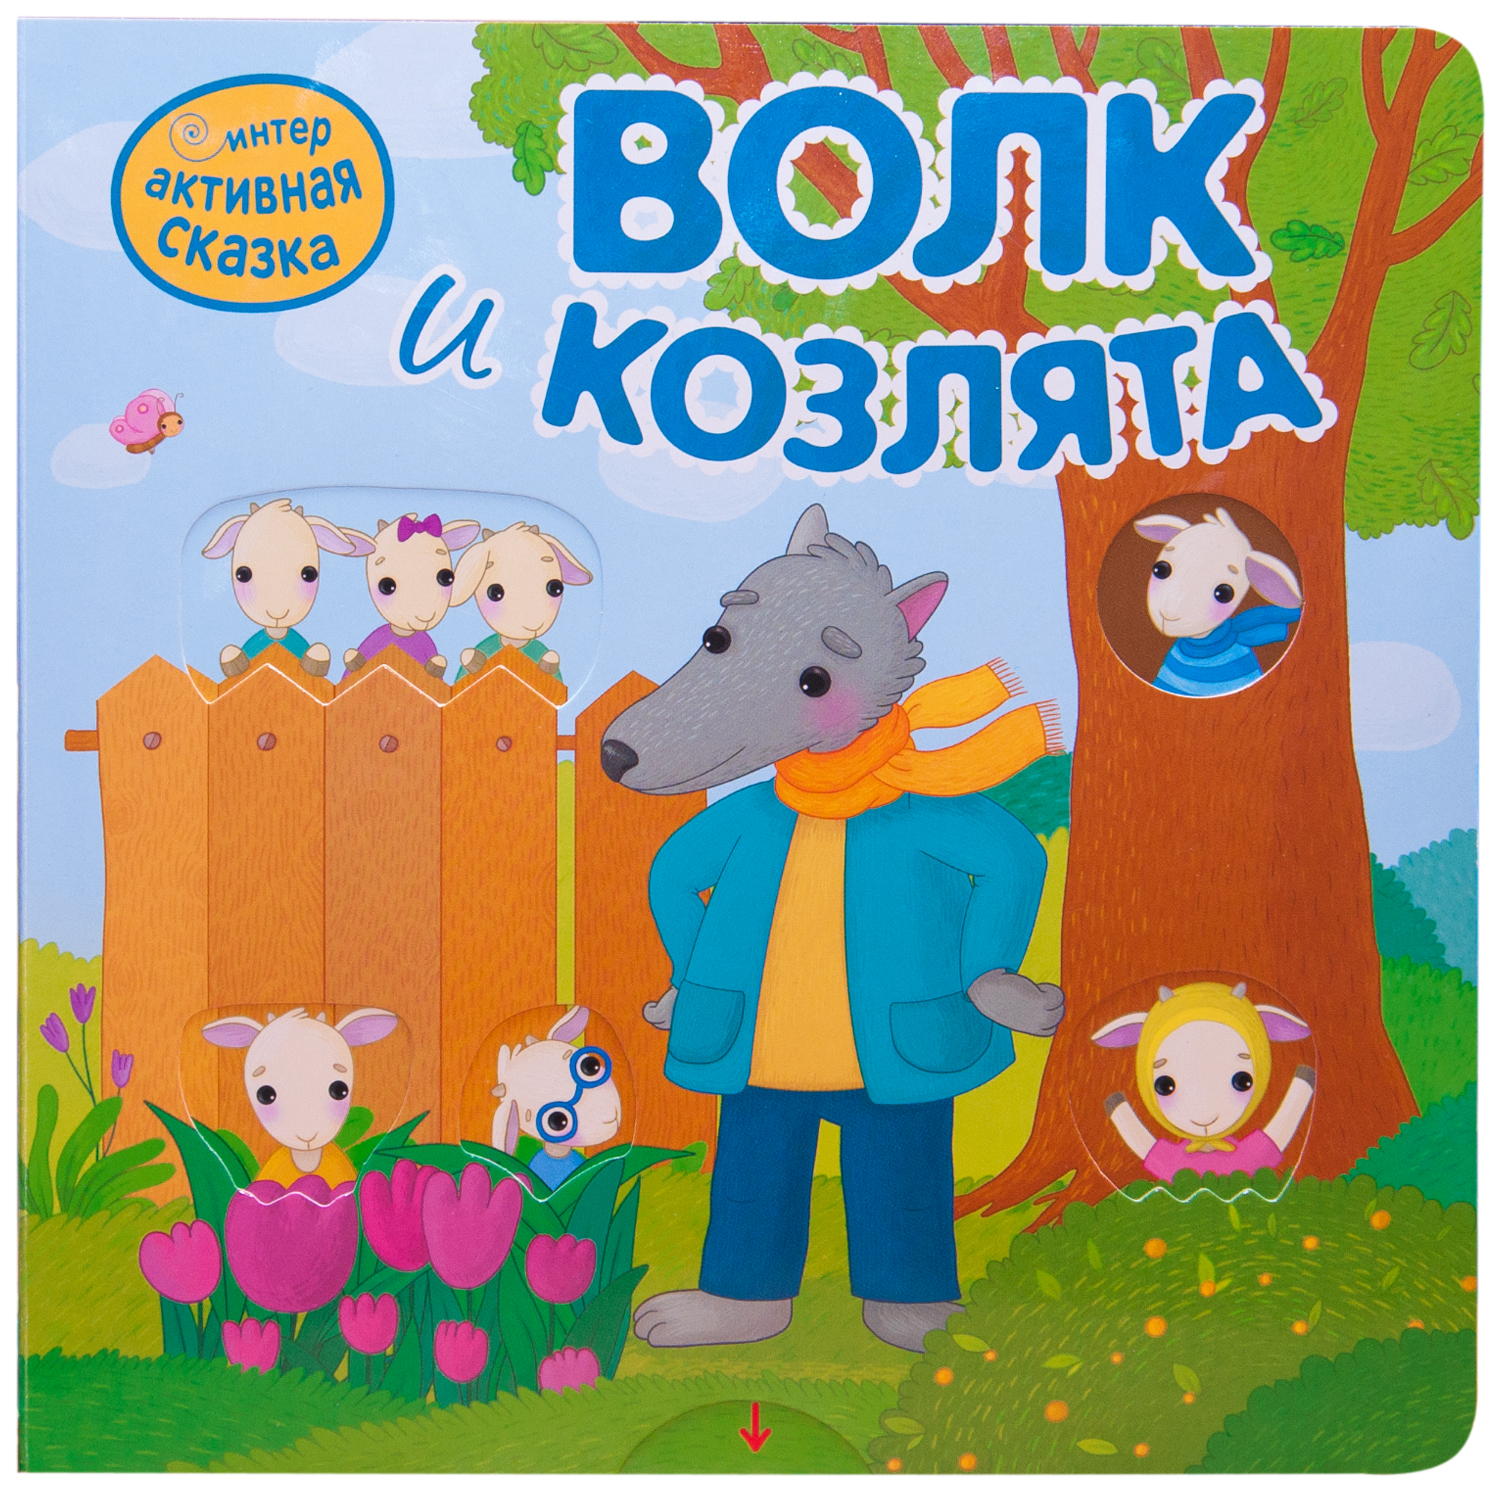 МОЗАИКА kids издательство Волк и козлята (Интерактивные сказки), книга с подвижными элемен